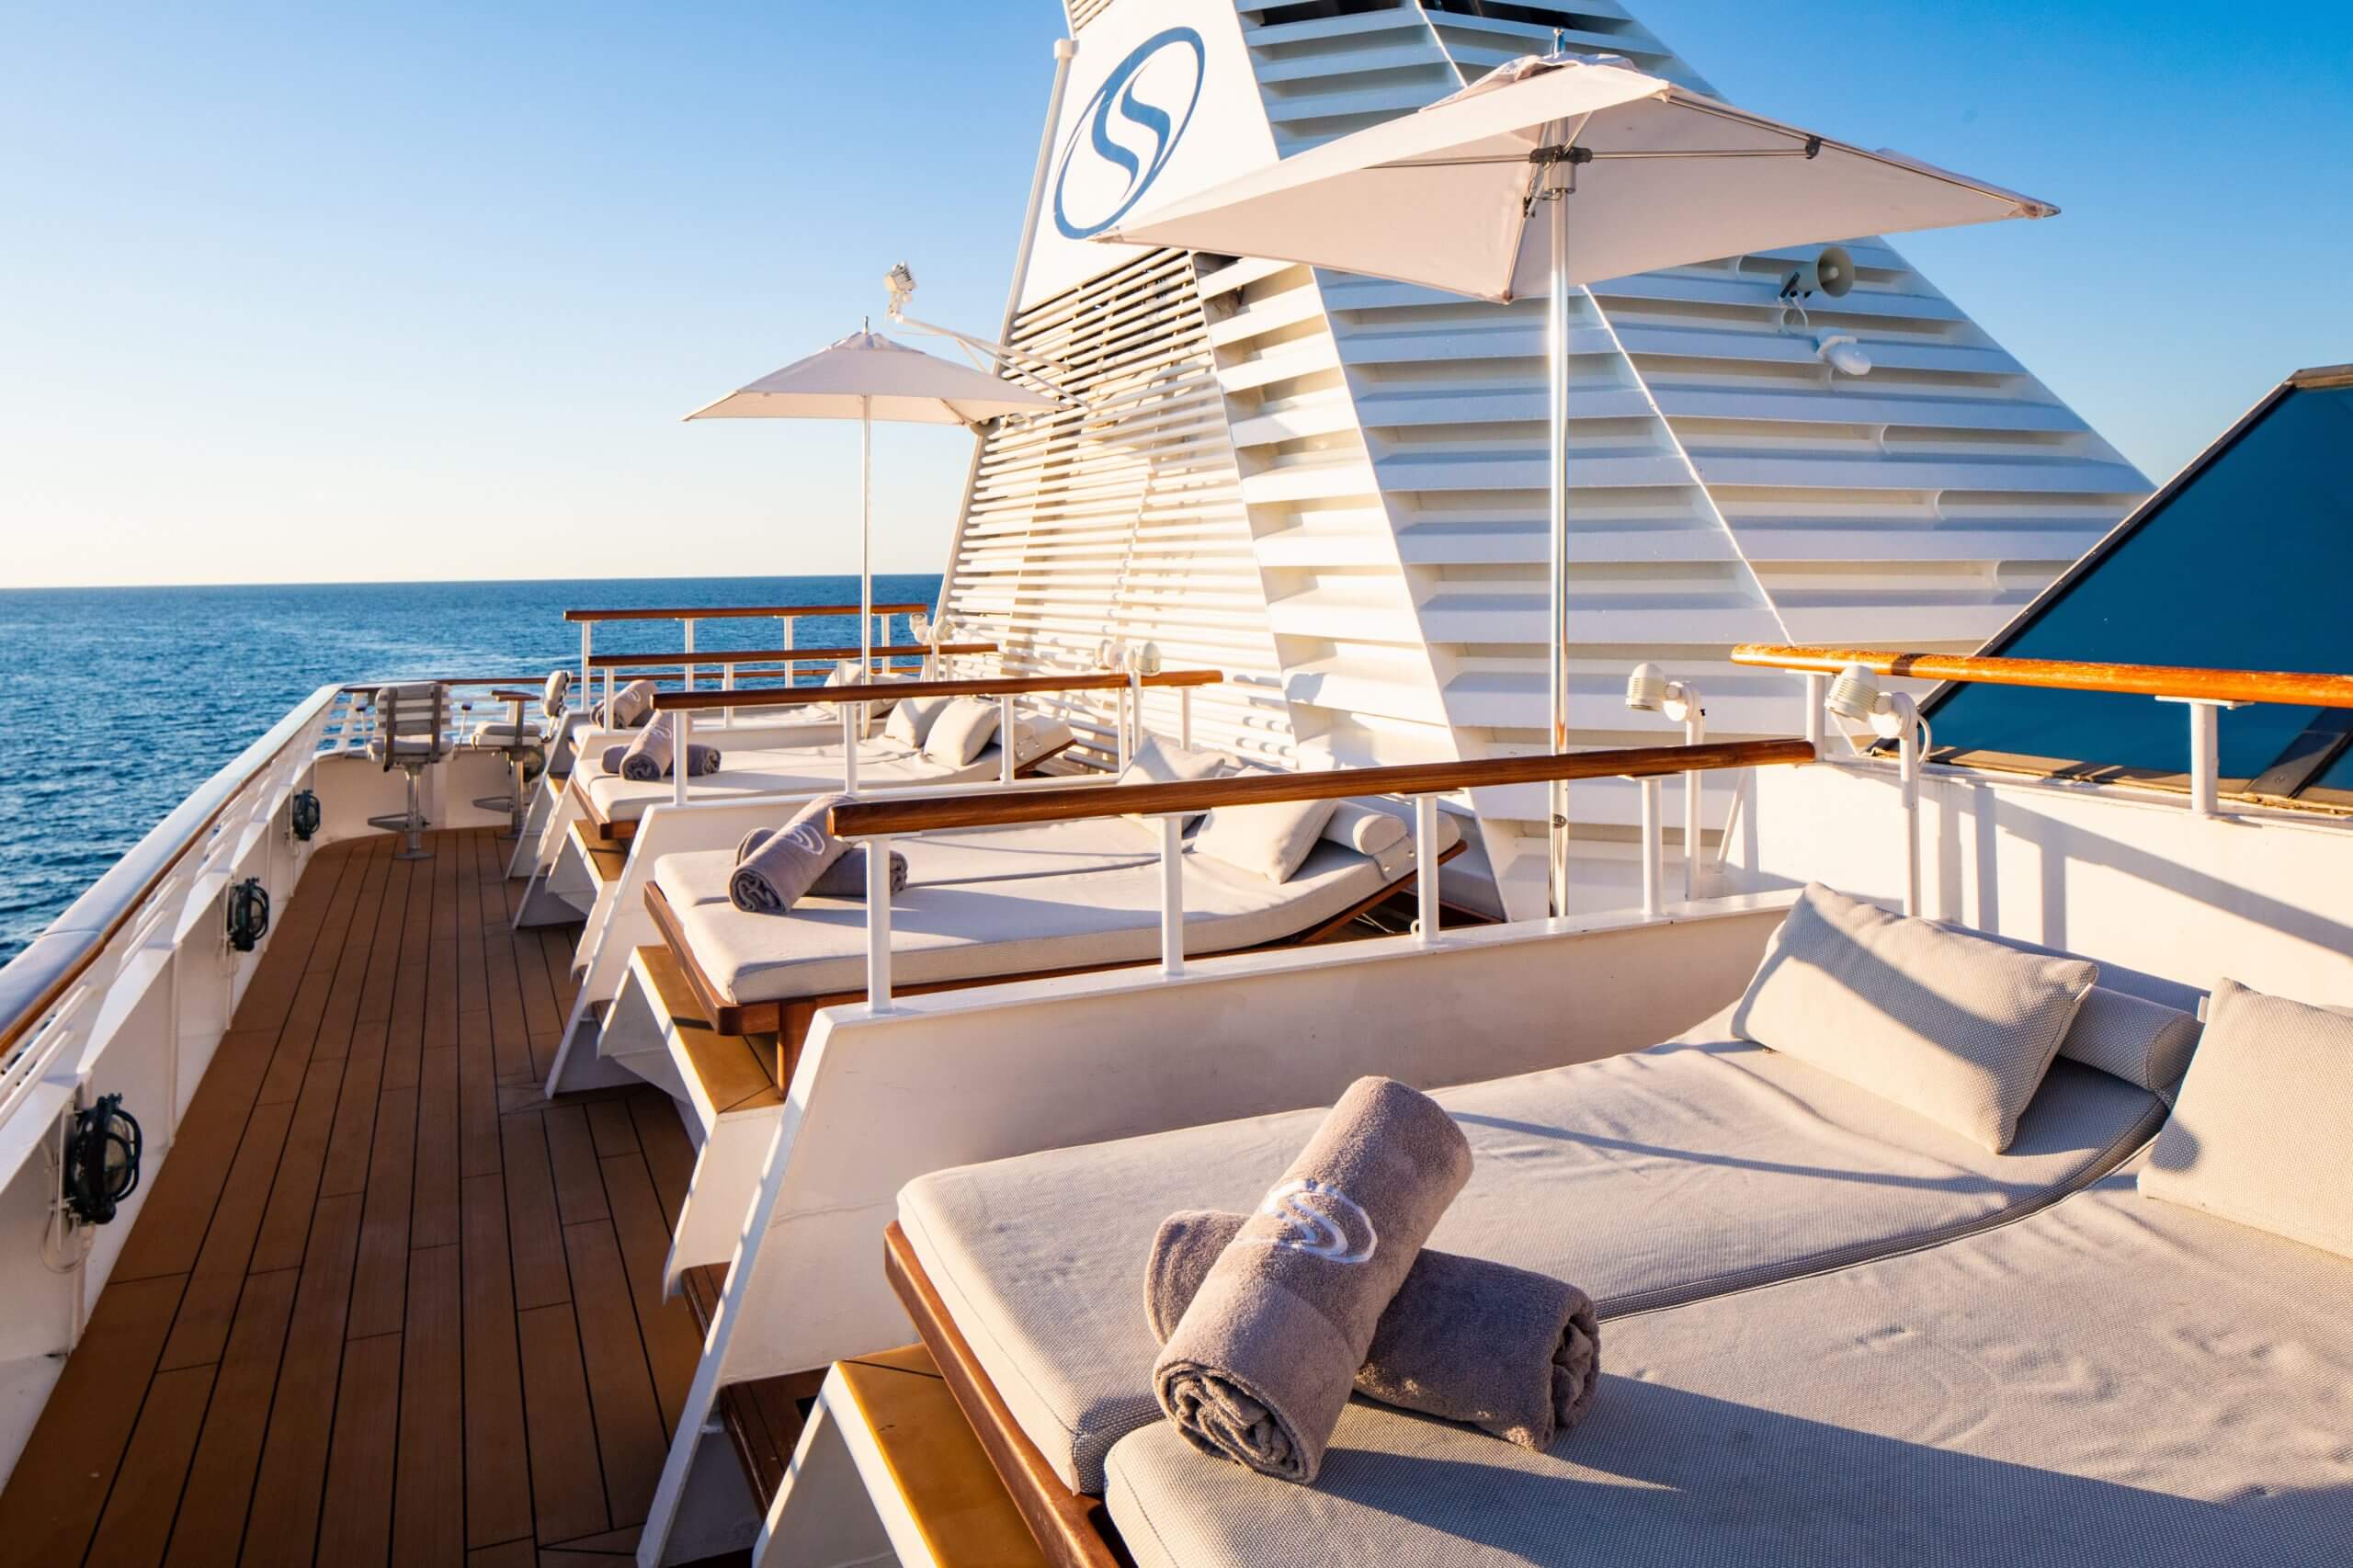 SeaDream Yacht Club prima linea di viaggio boutique a implementare Starlink